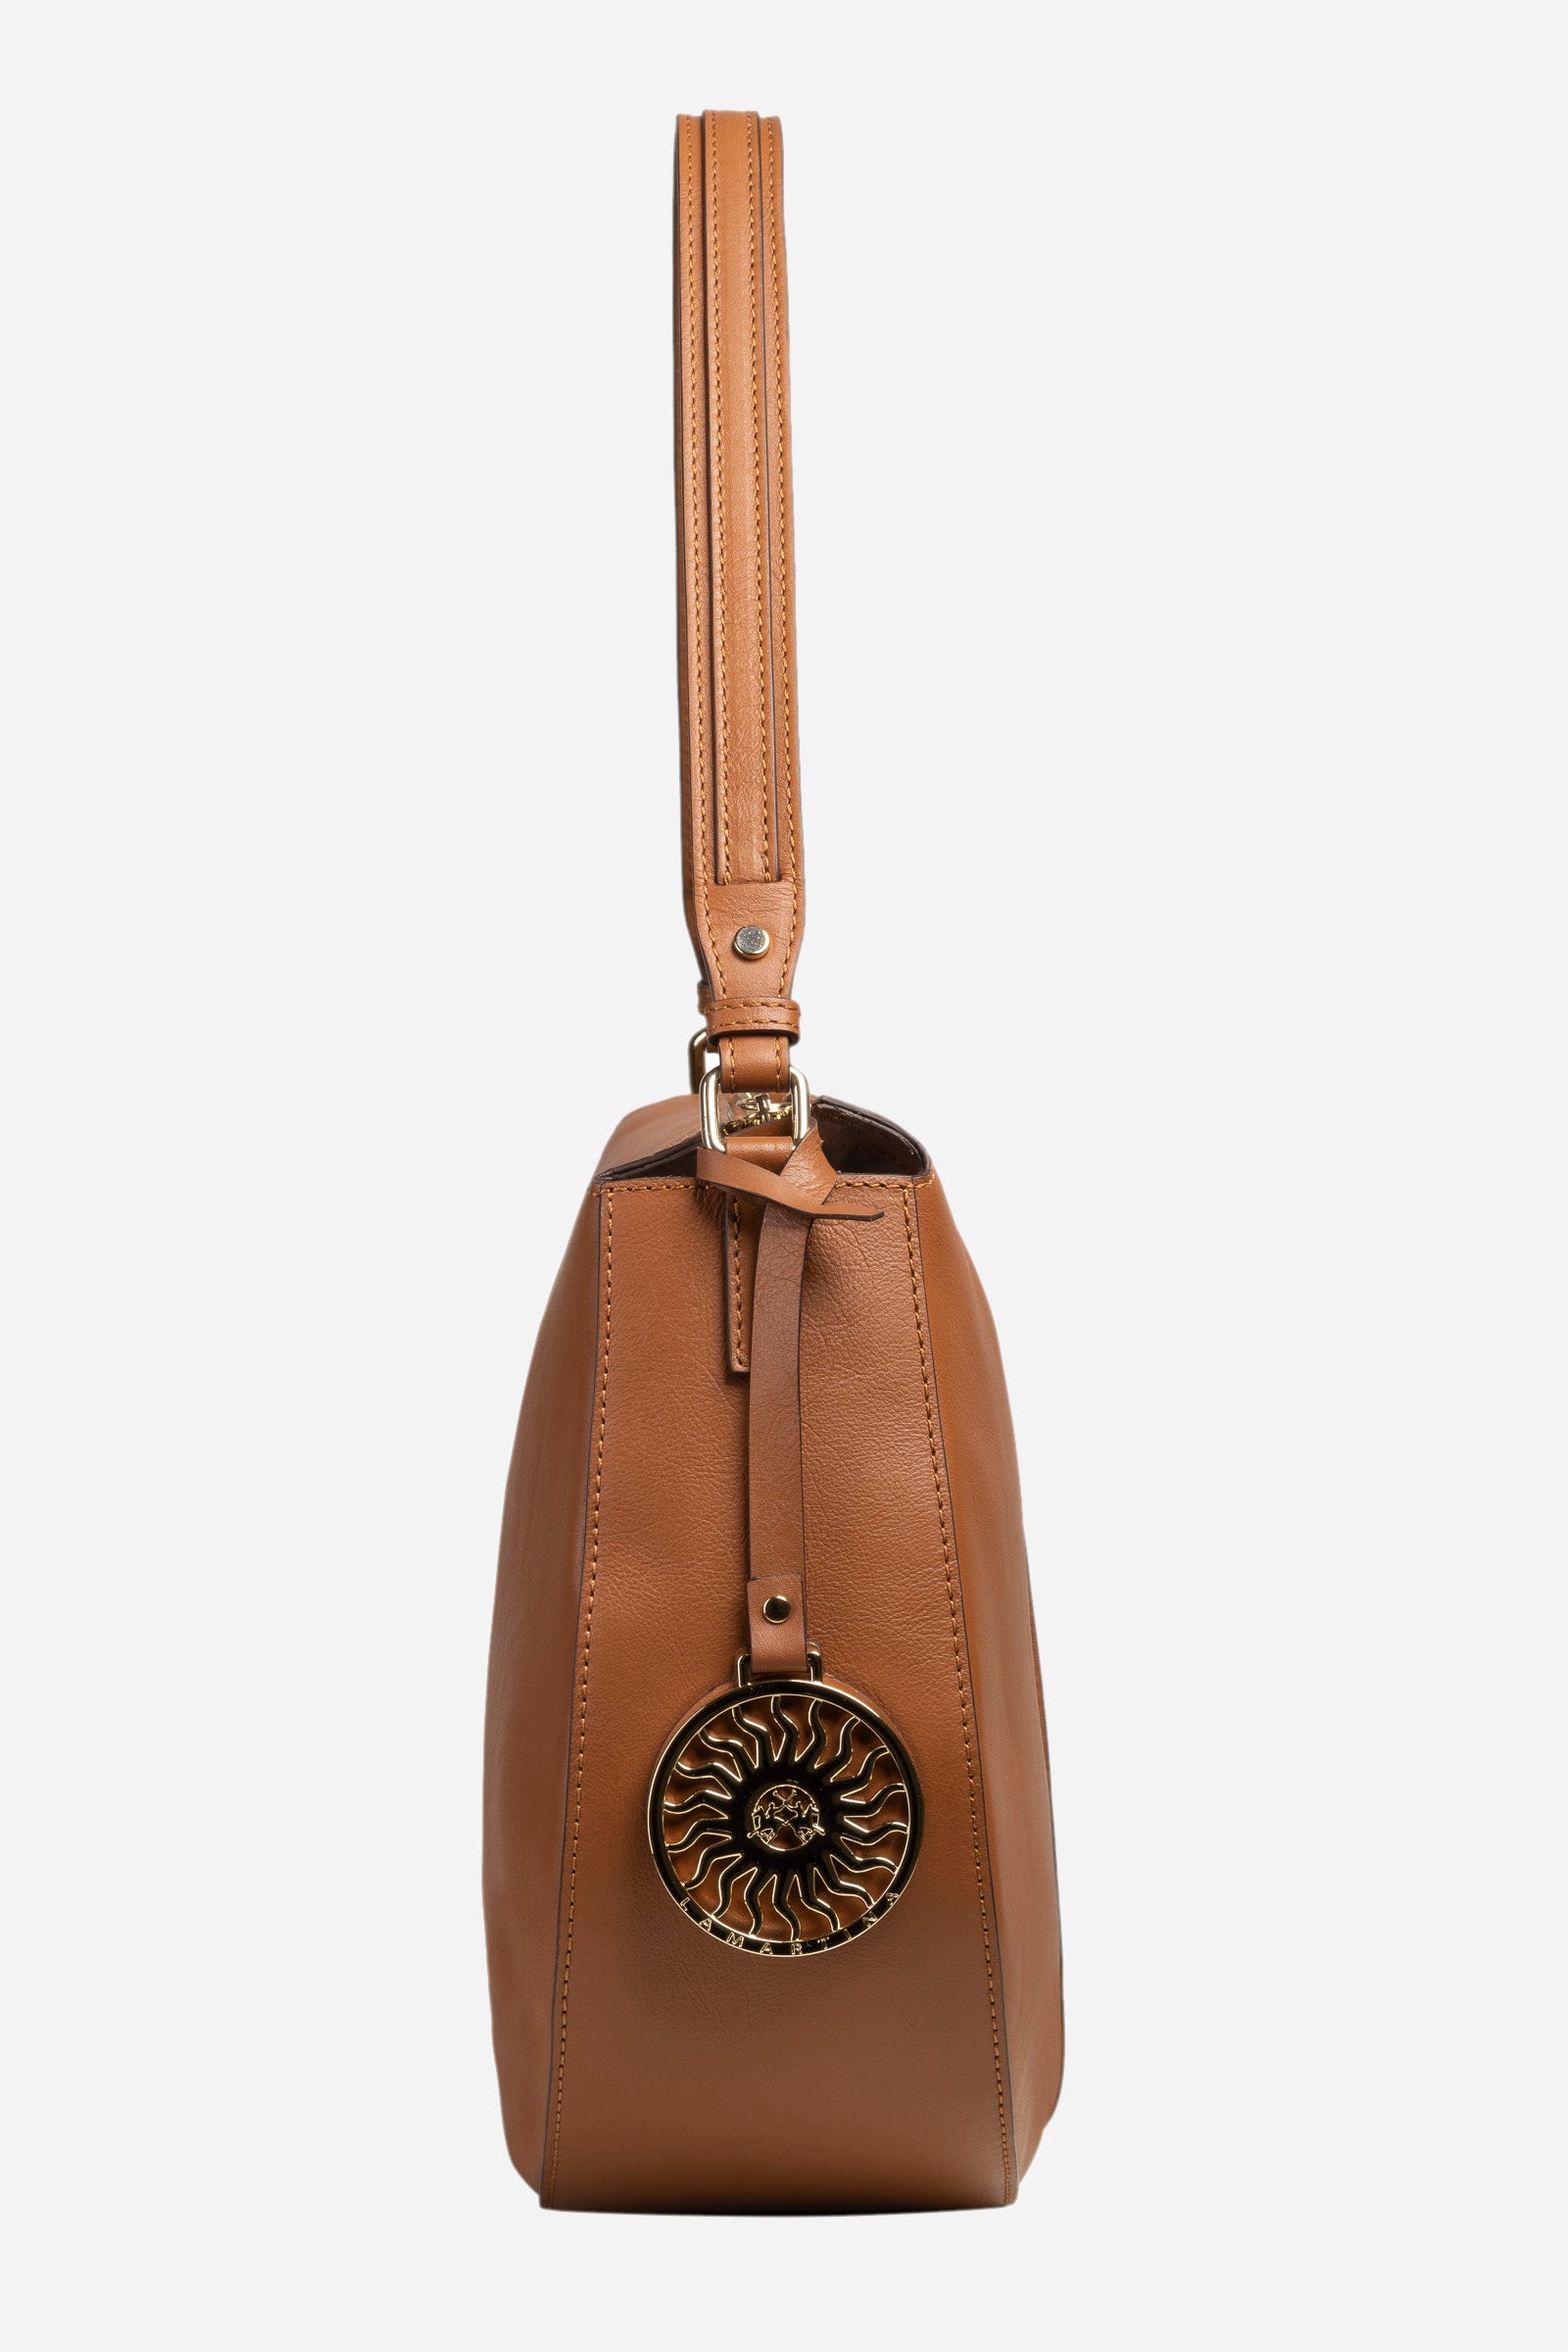 Leather shoulder bag - Denise